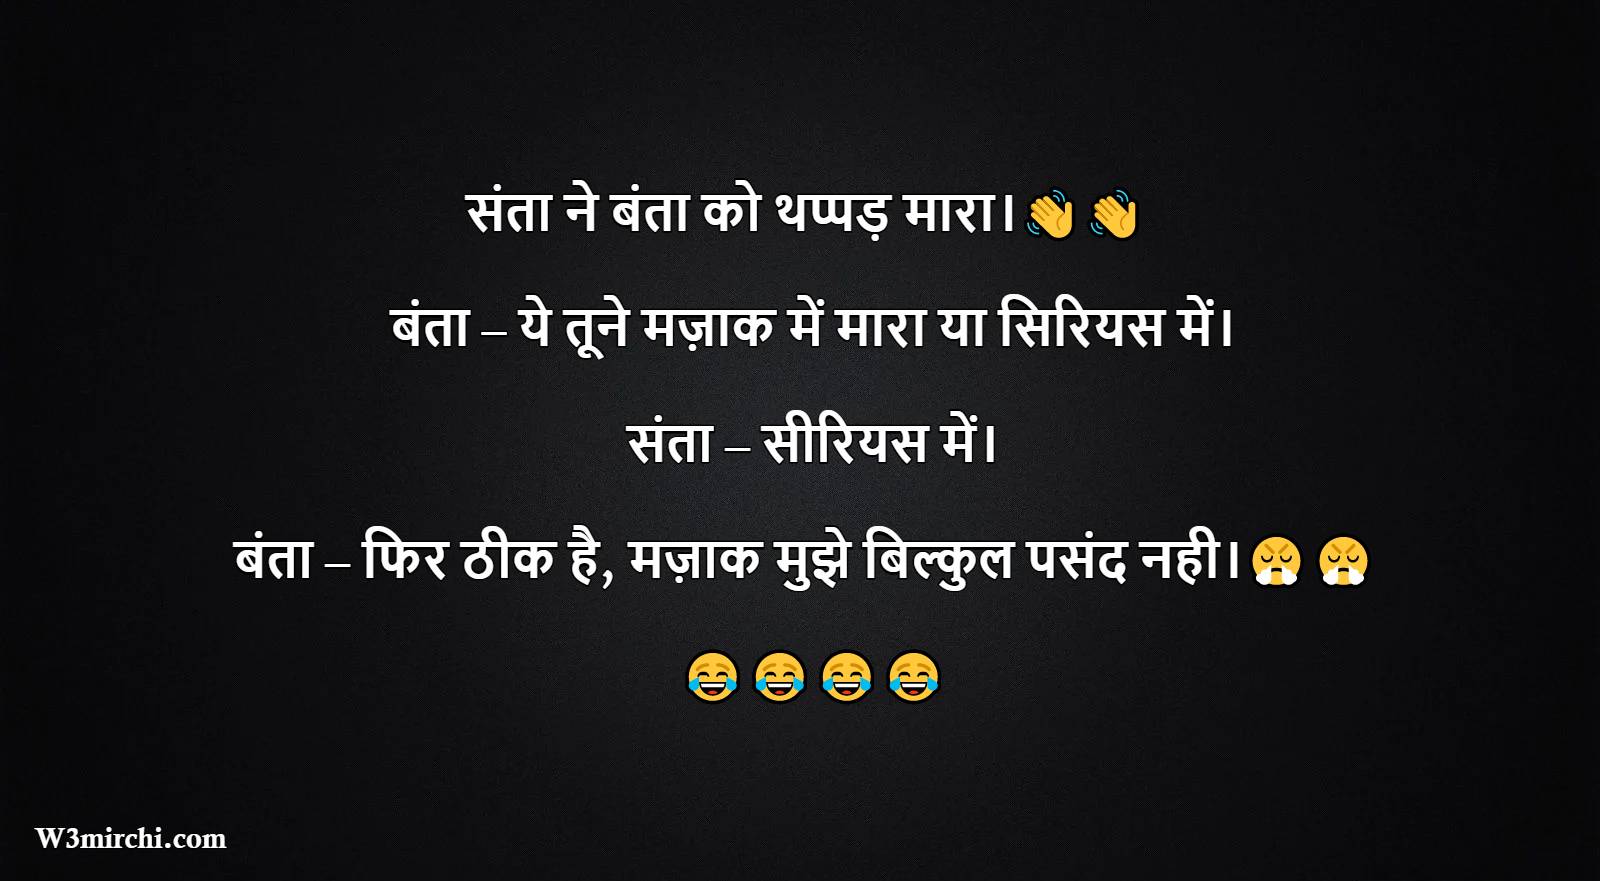 Lastest Jokes in Hindi